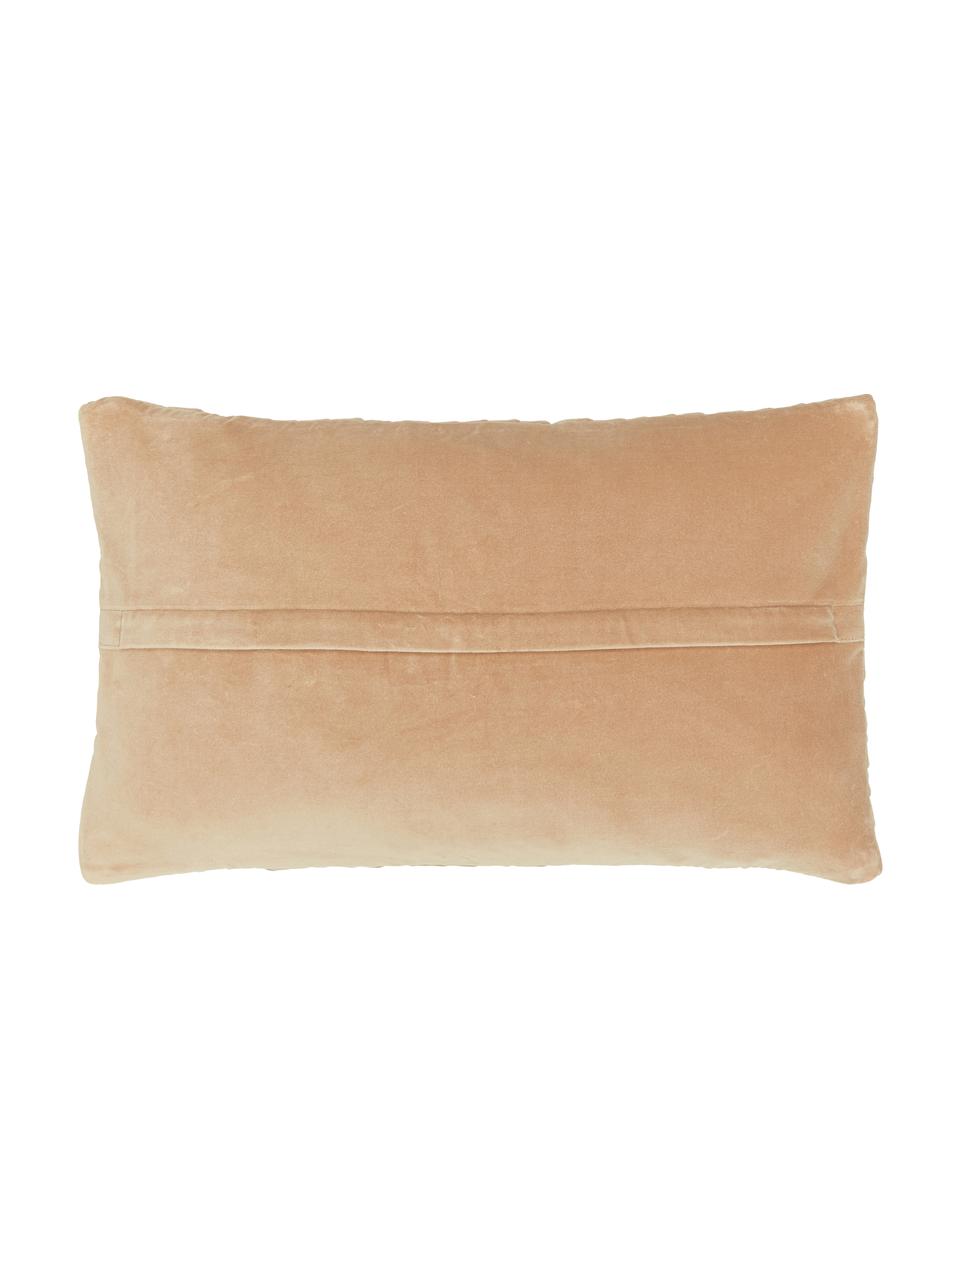 Poszewka na poduszkę z aksamitu Sina, Aksamit (100% bawełna), Ochrowy, S 30 x D 50 cm